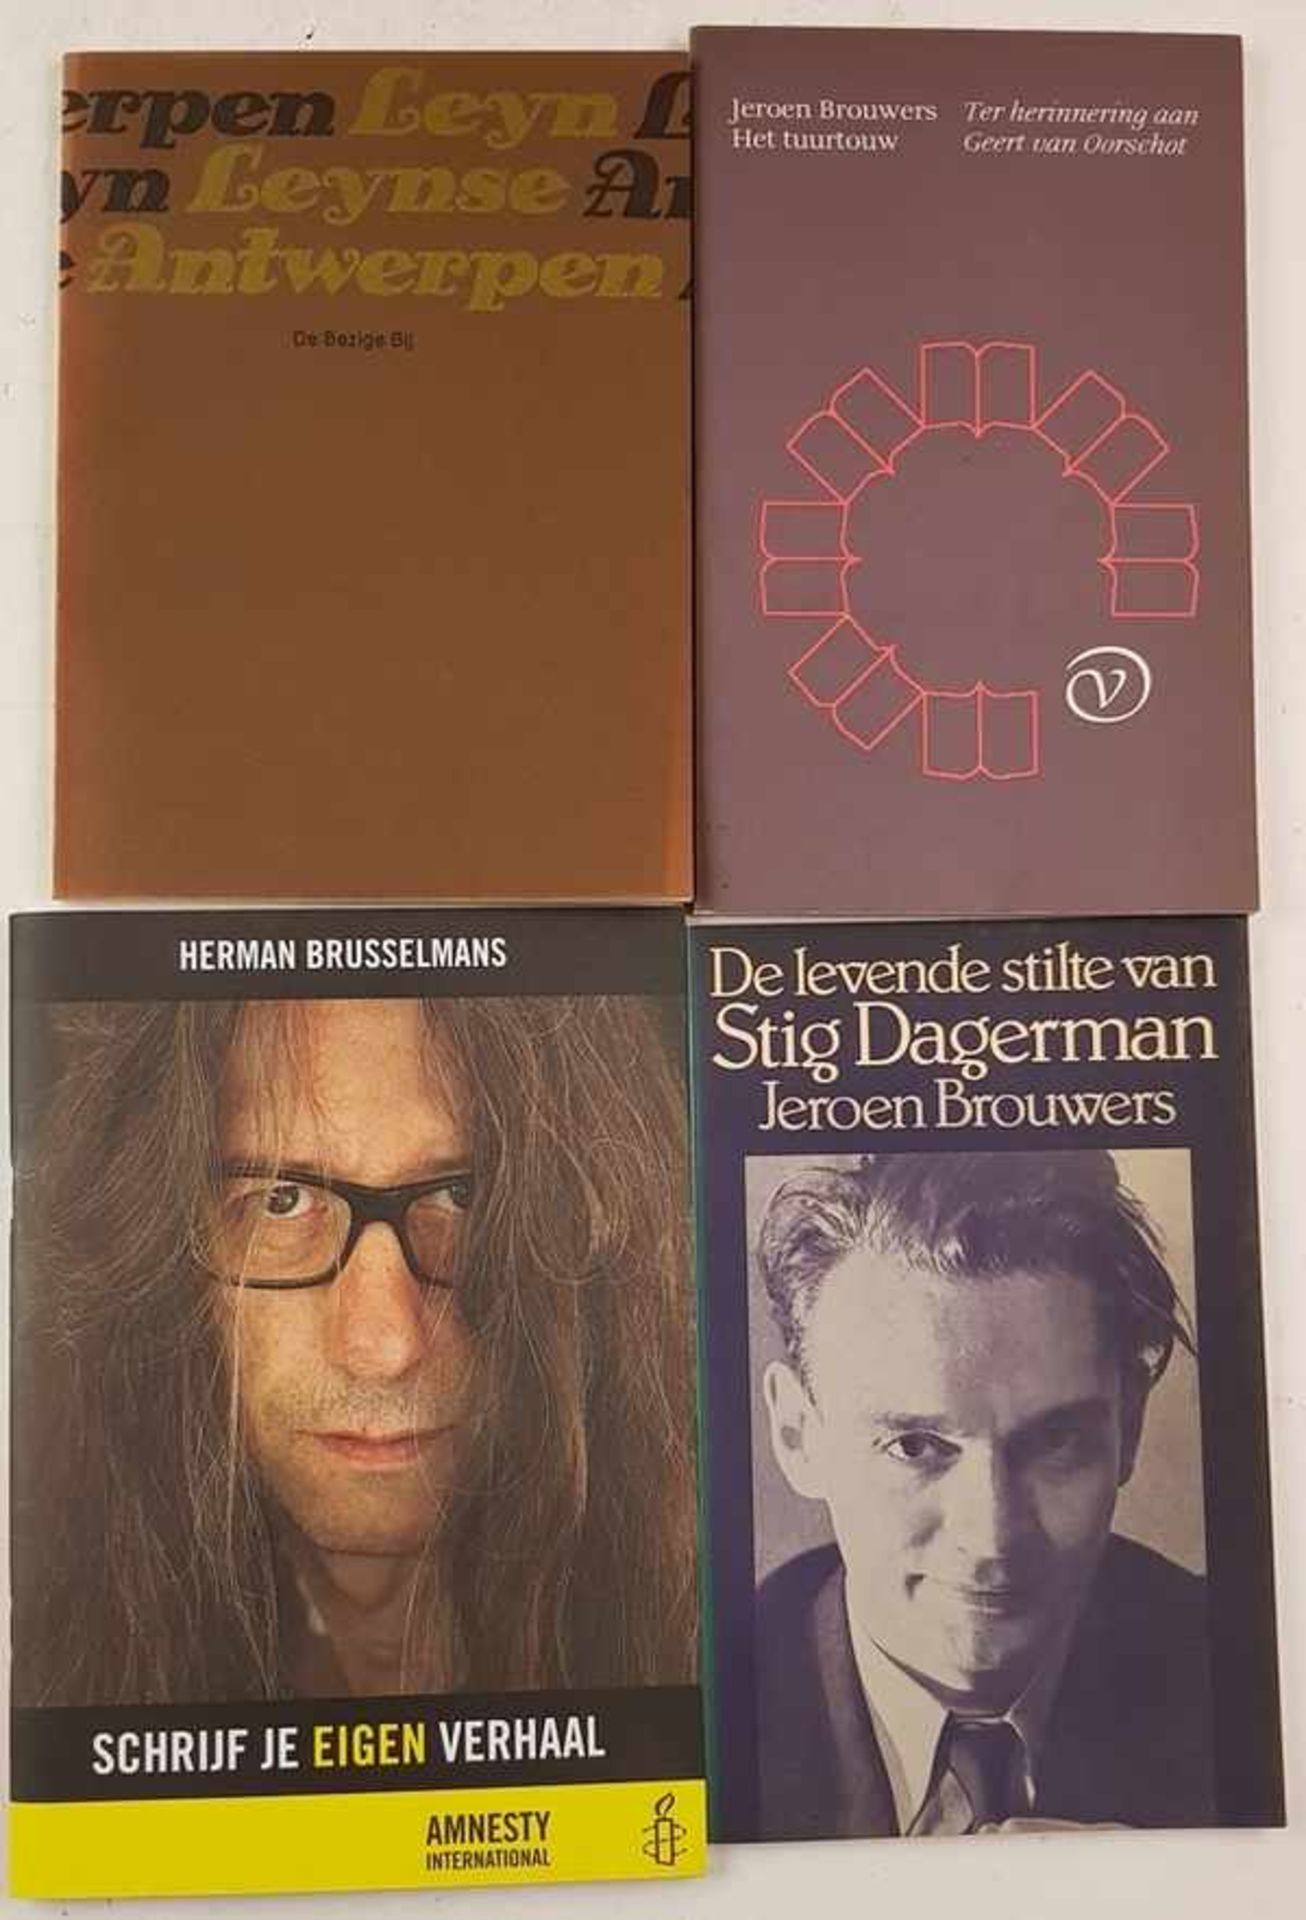 (Boeken) (Literatuur) Een lot met Vlaamse auteursEen uitgebreid lot met literaire werken van Vlaamse - Bild 2 aus 5